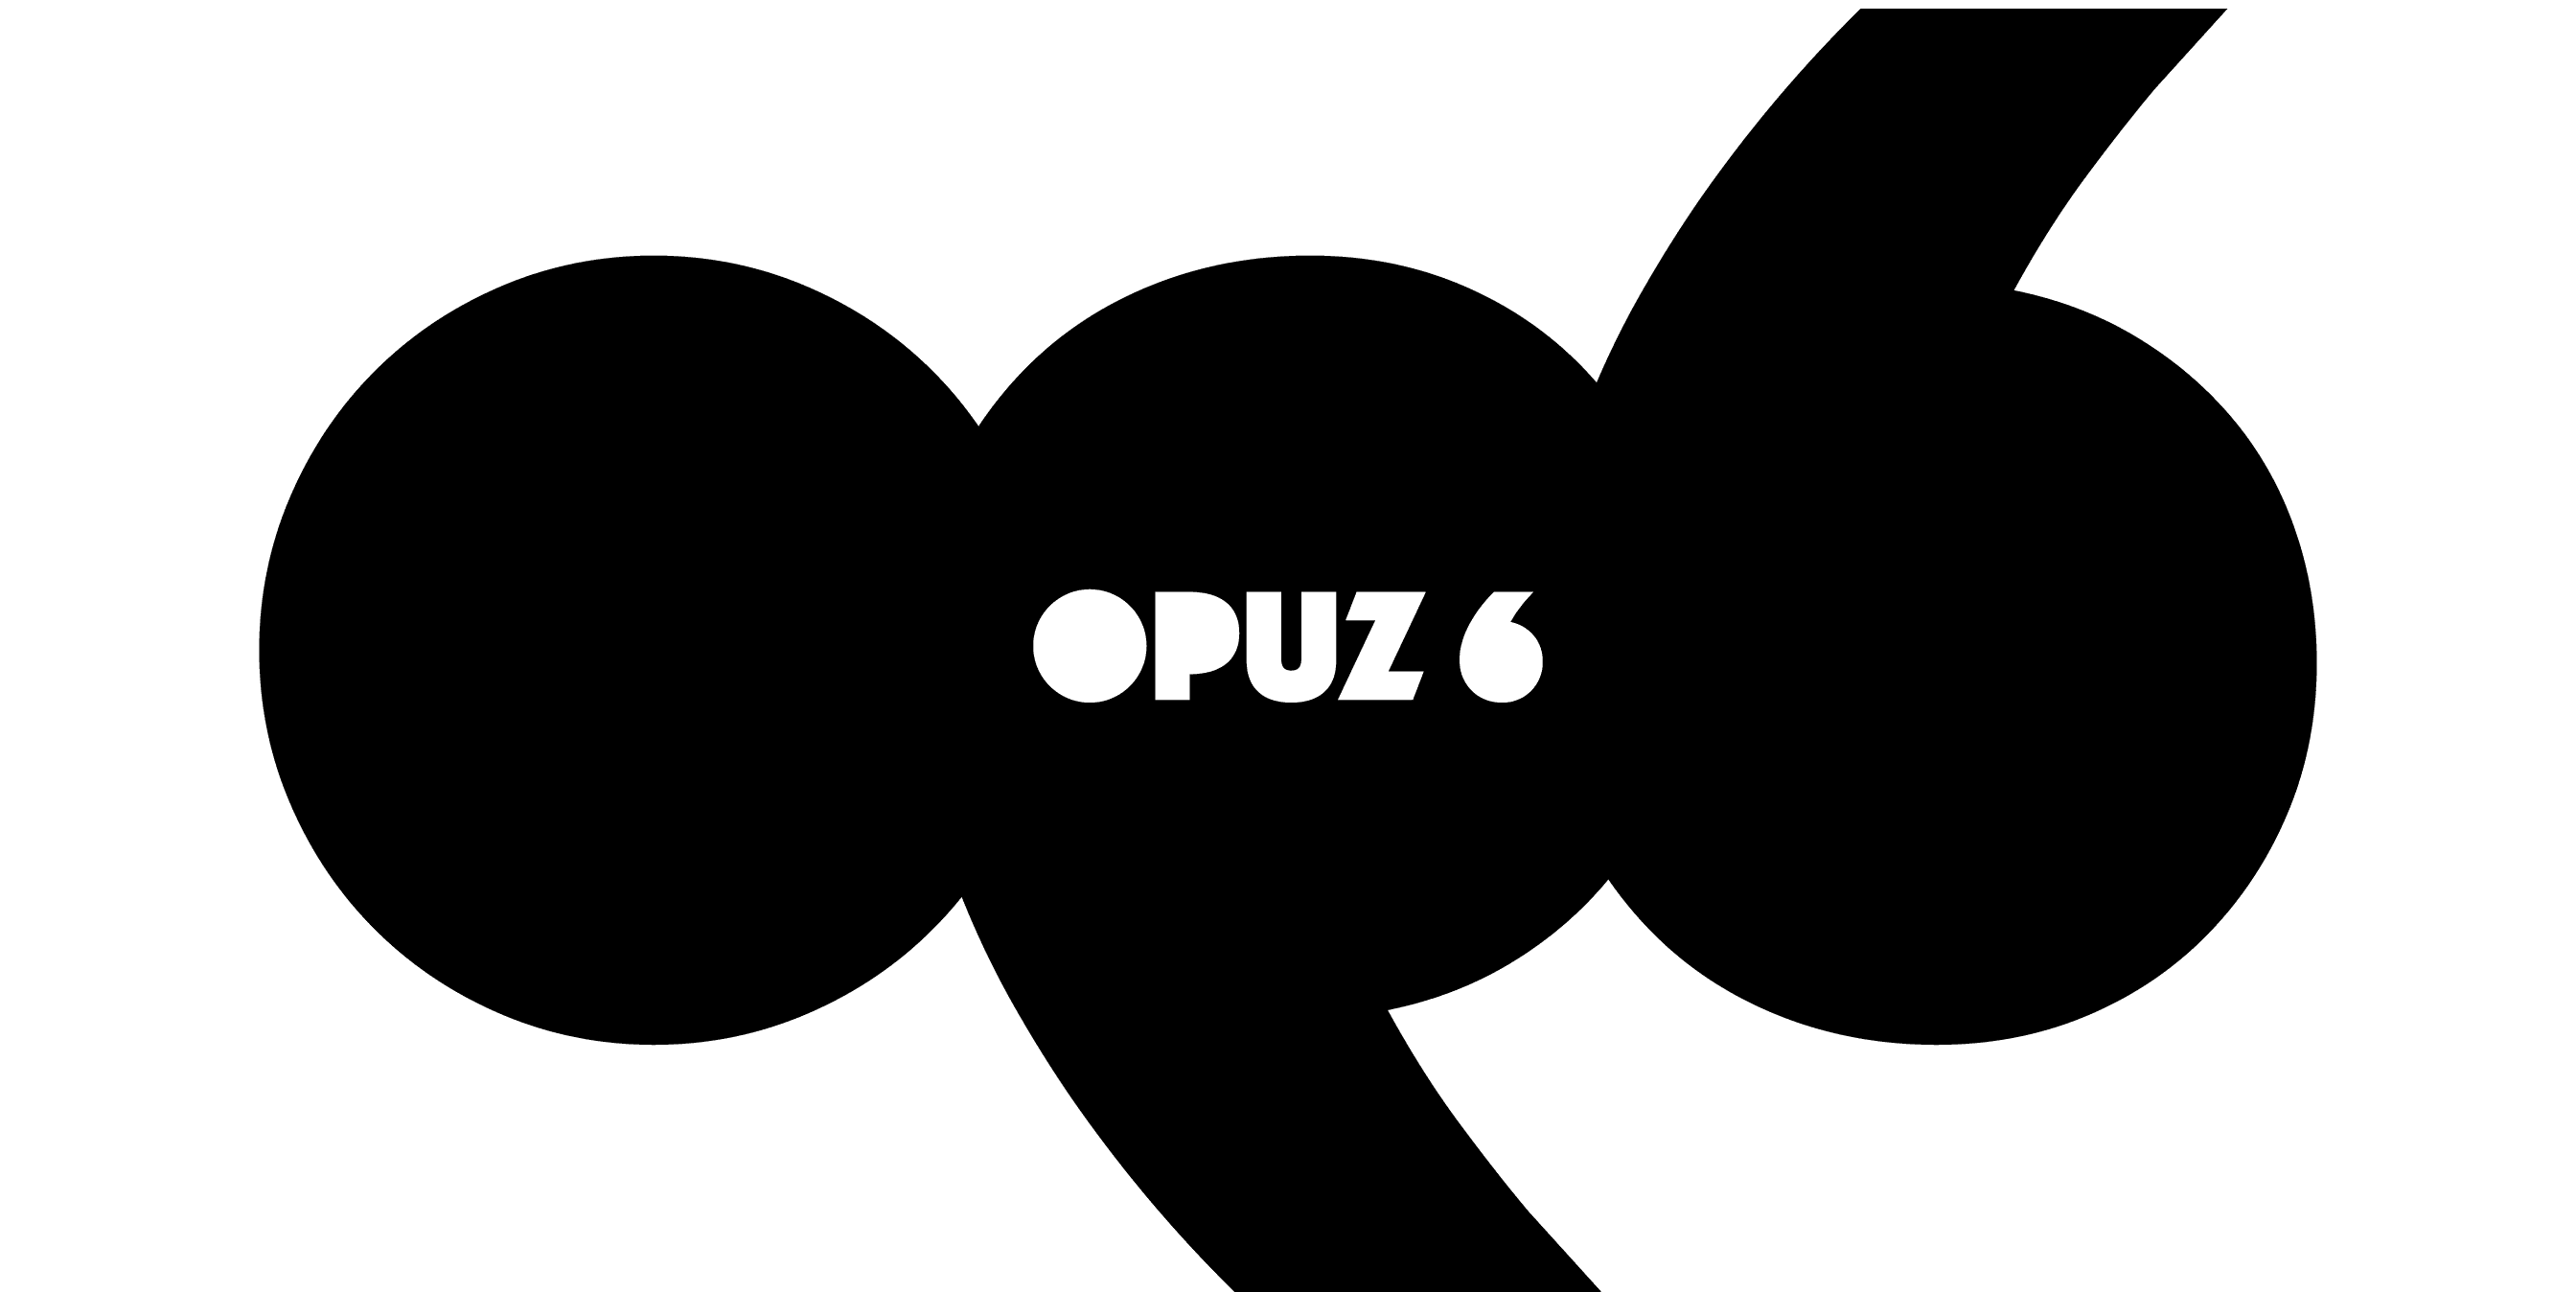 Logotipo para grupo de ciclismo urbano "Opuz 6"